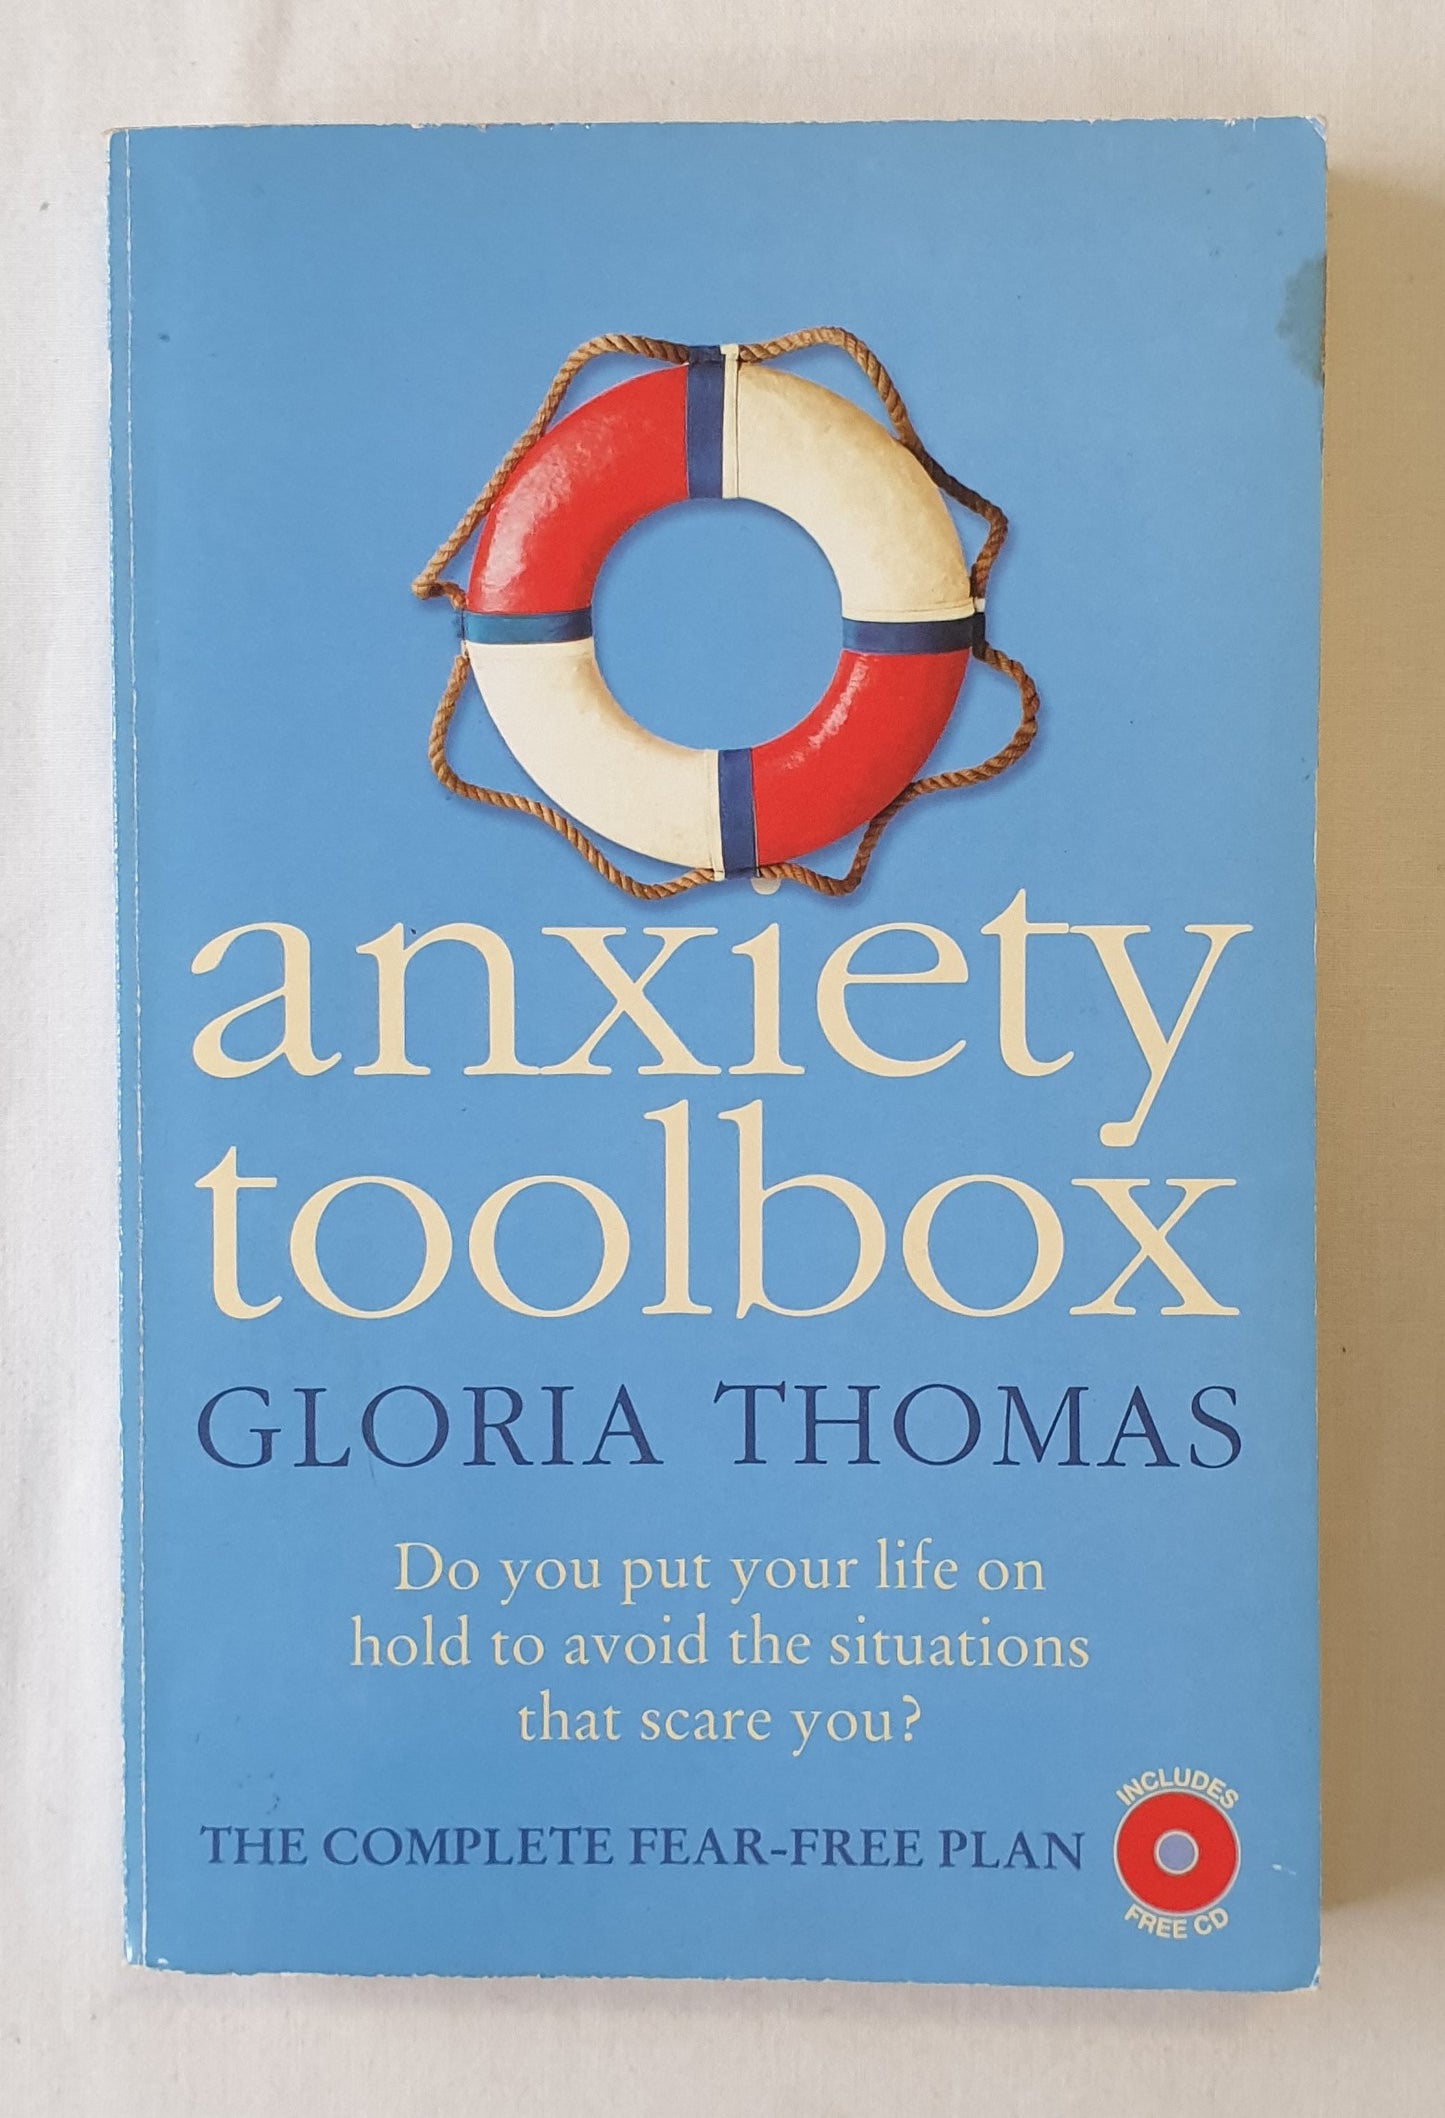 Anxiety Toolbox by Gloria Thomas